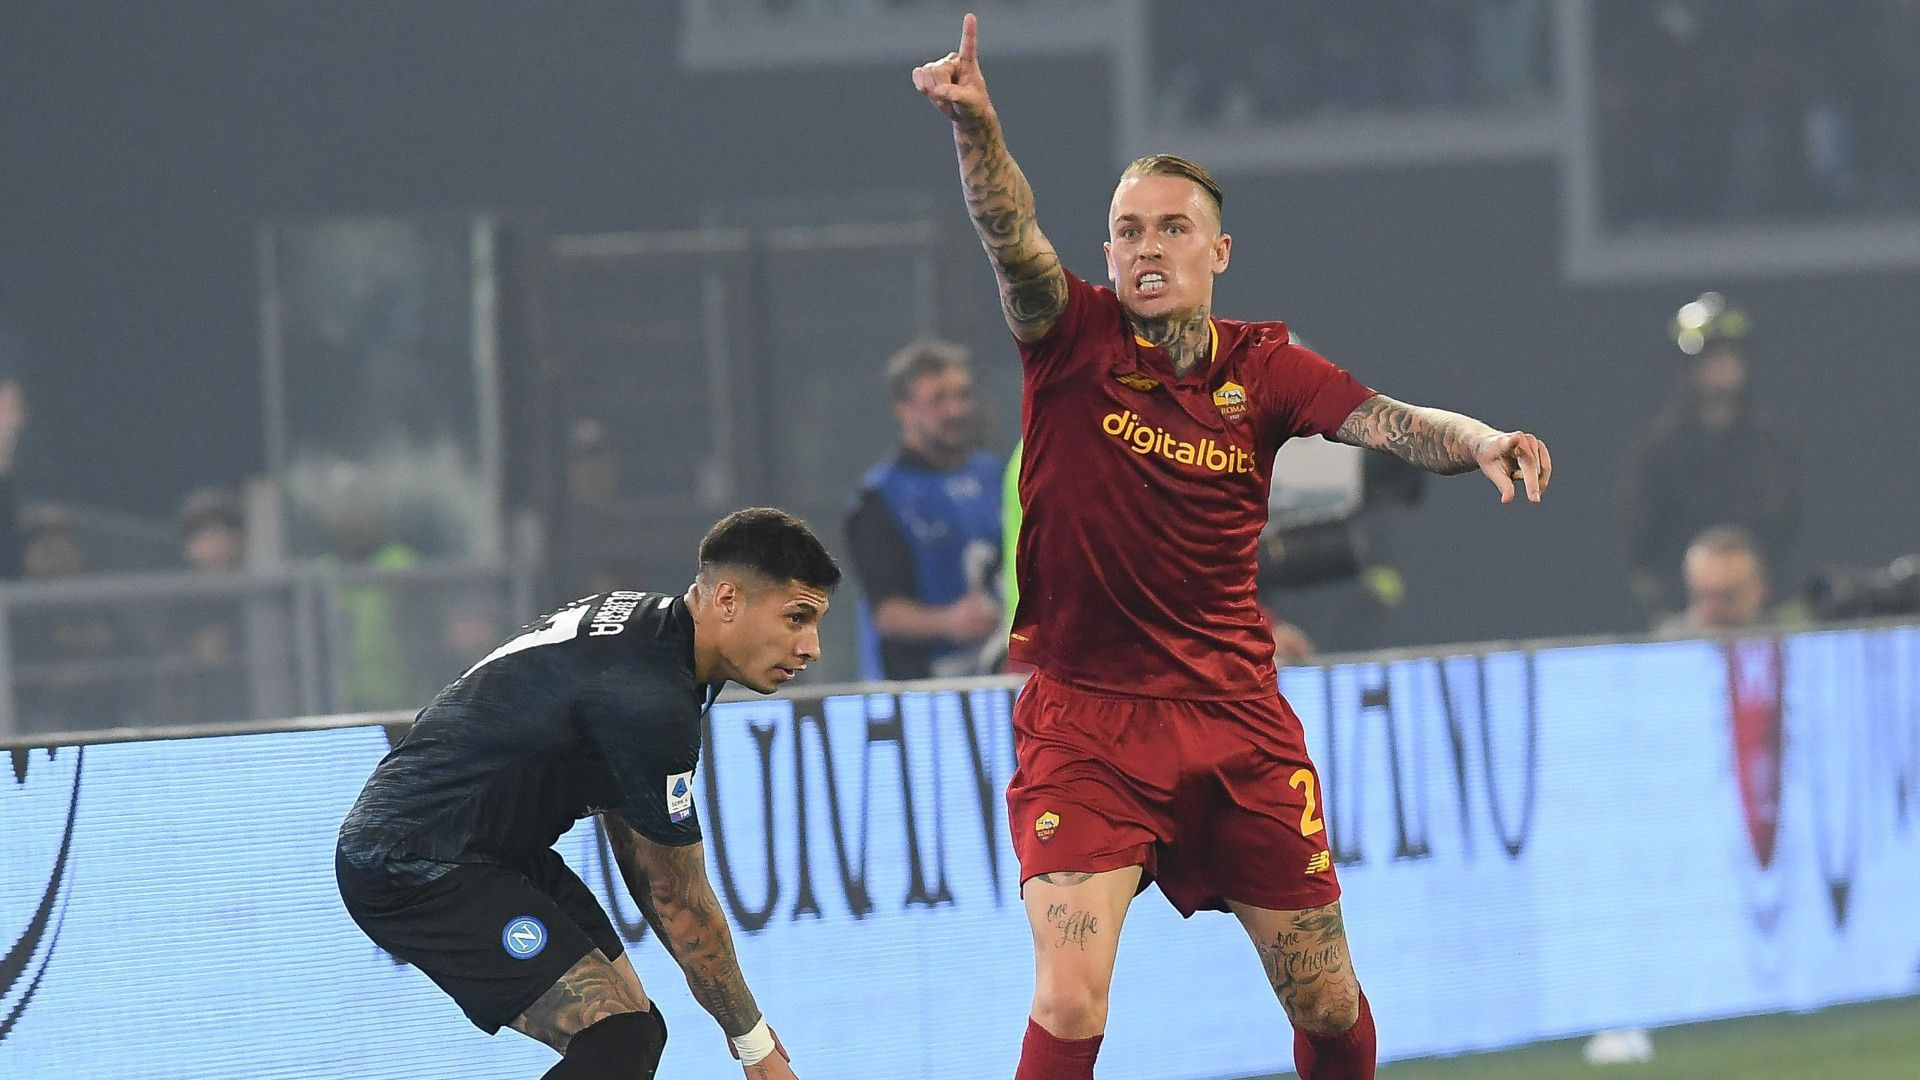 A Roma játékosa és a játékvezető egymásnak ment a Napoli elleni meccs után – videóval